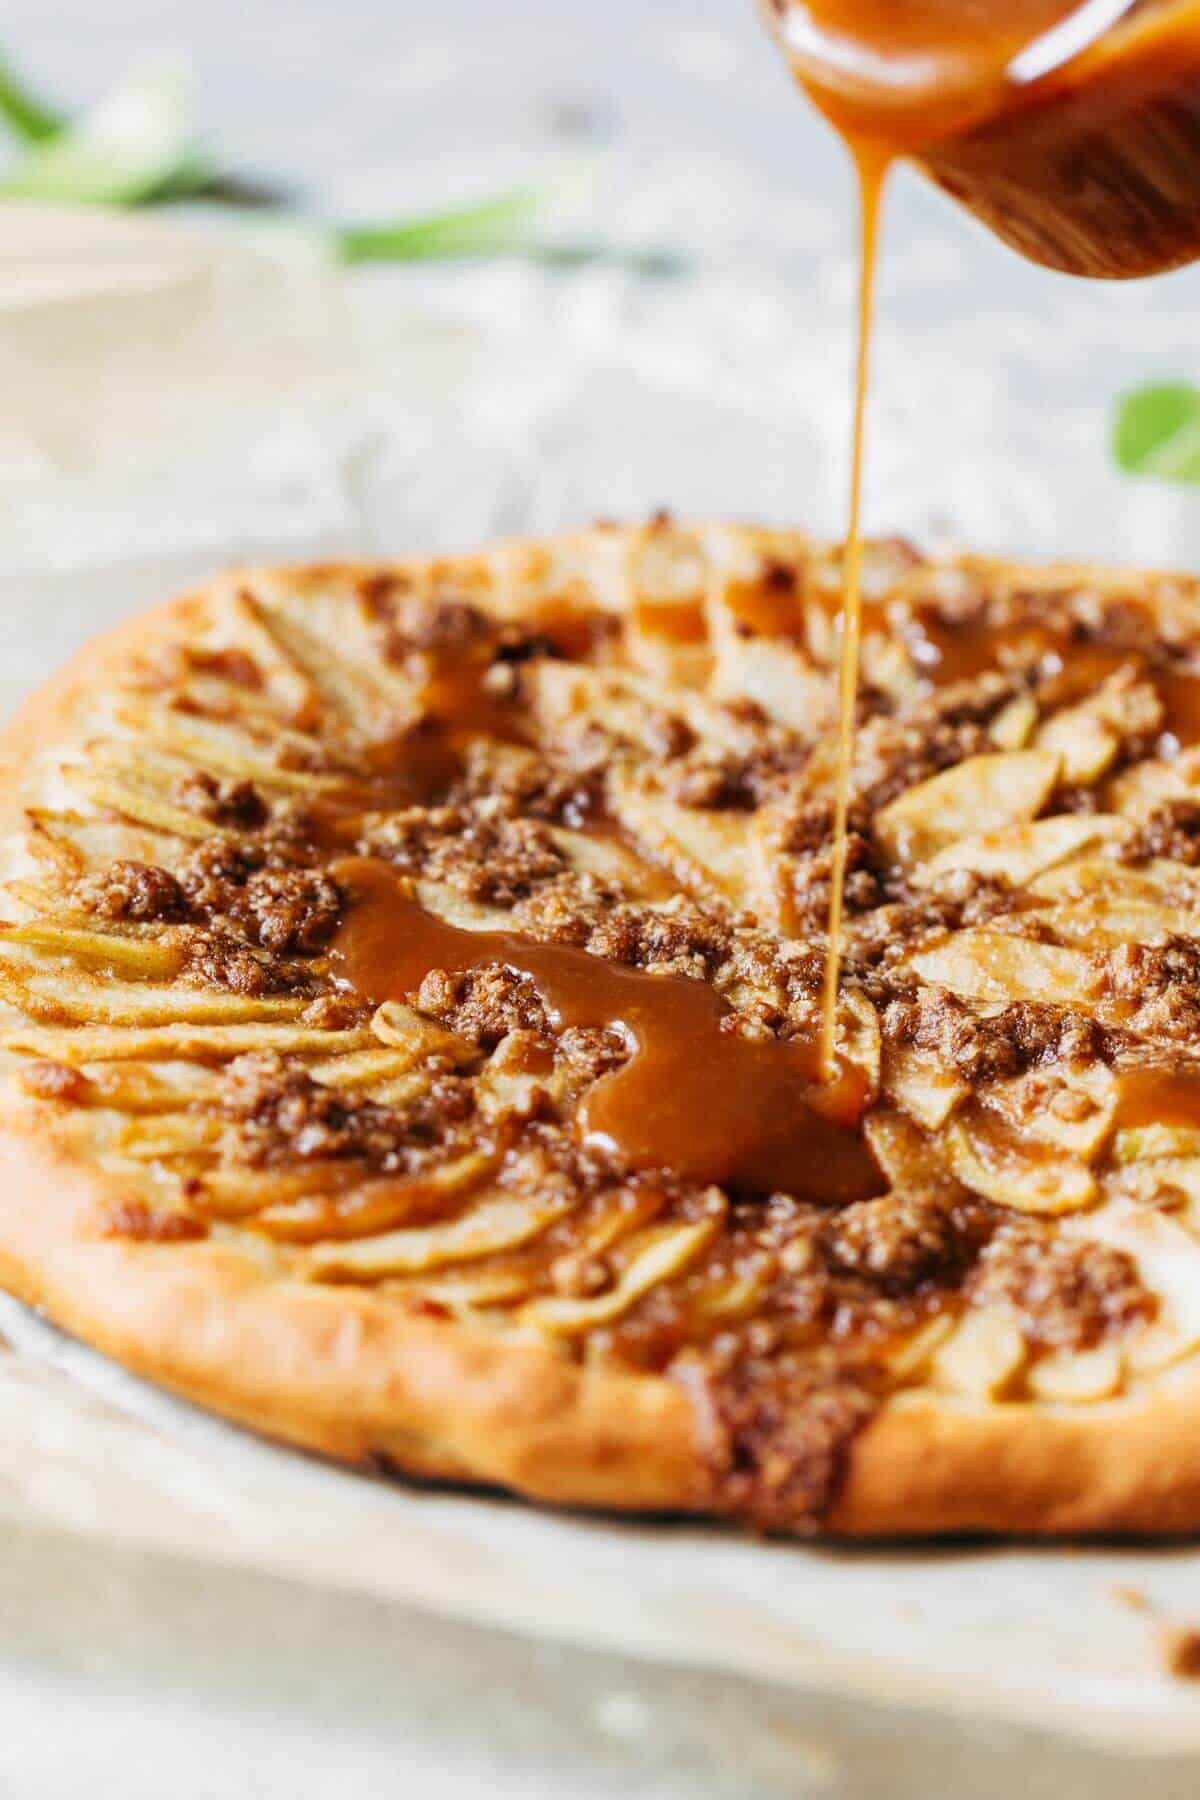 https://butternutbakeryblog.com/wp-content/uploads/2019/11/Caramel-Apple-Dessert-Pizza.jpg